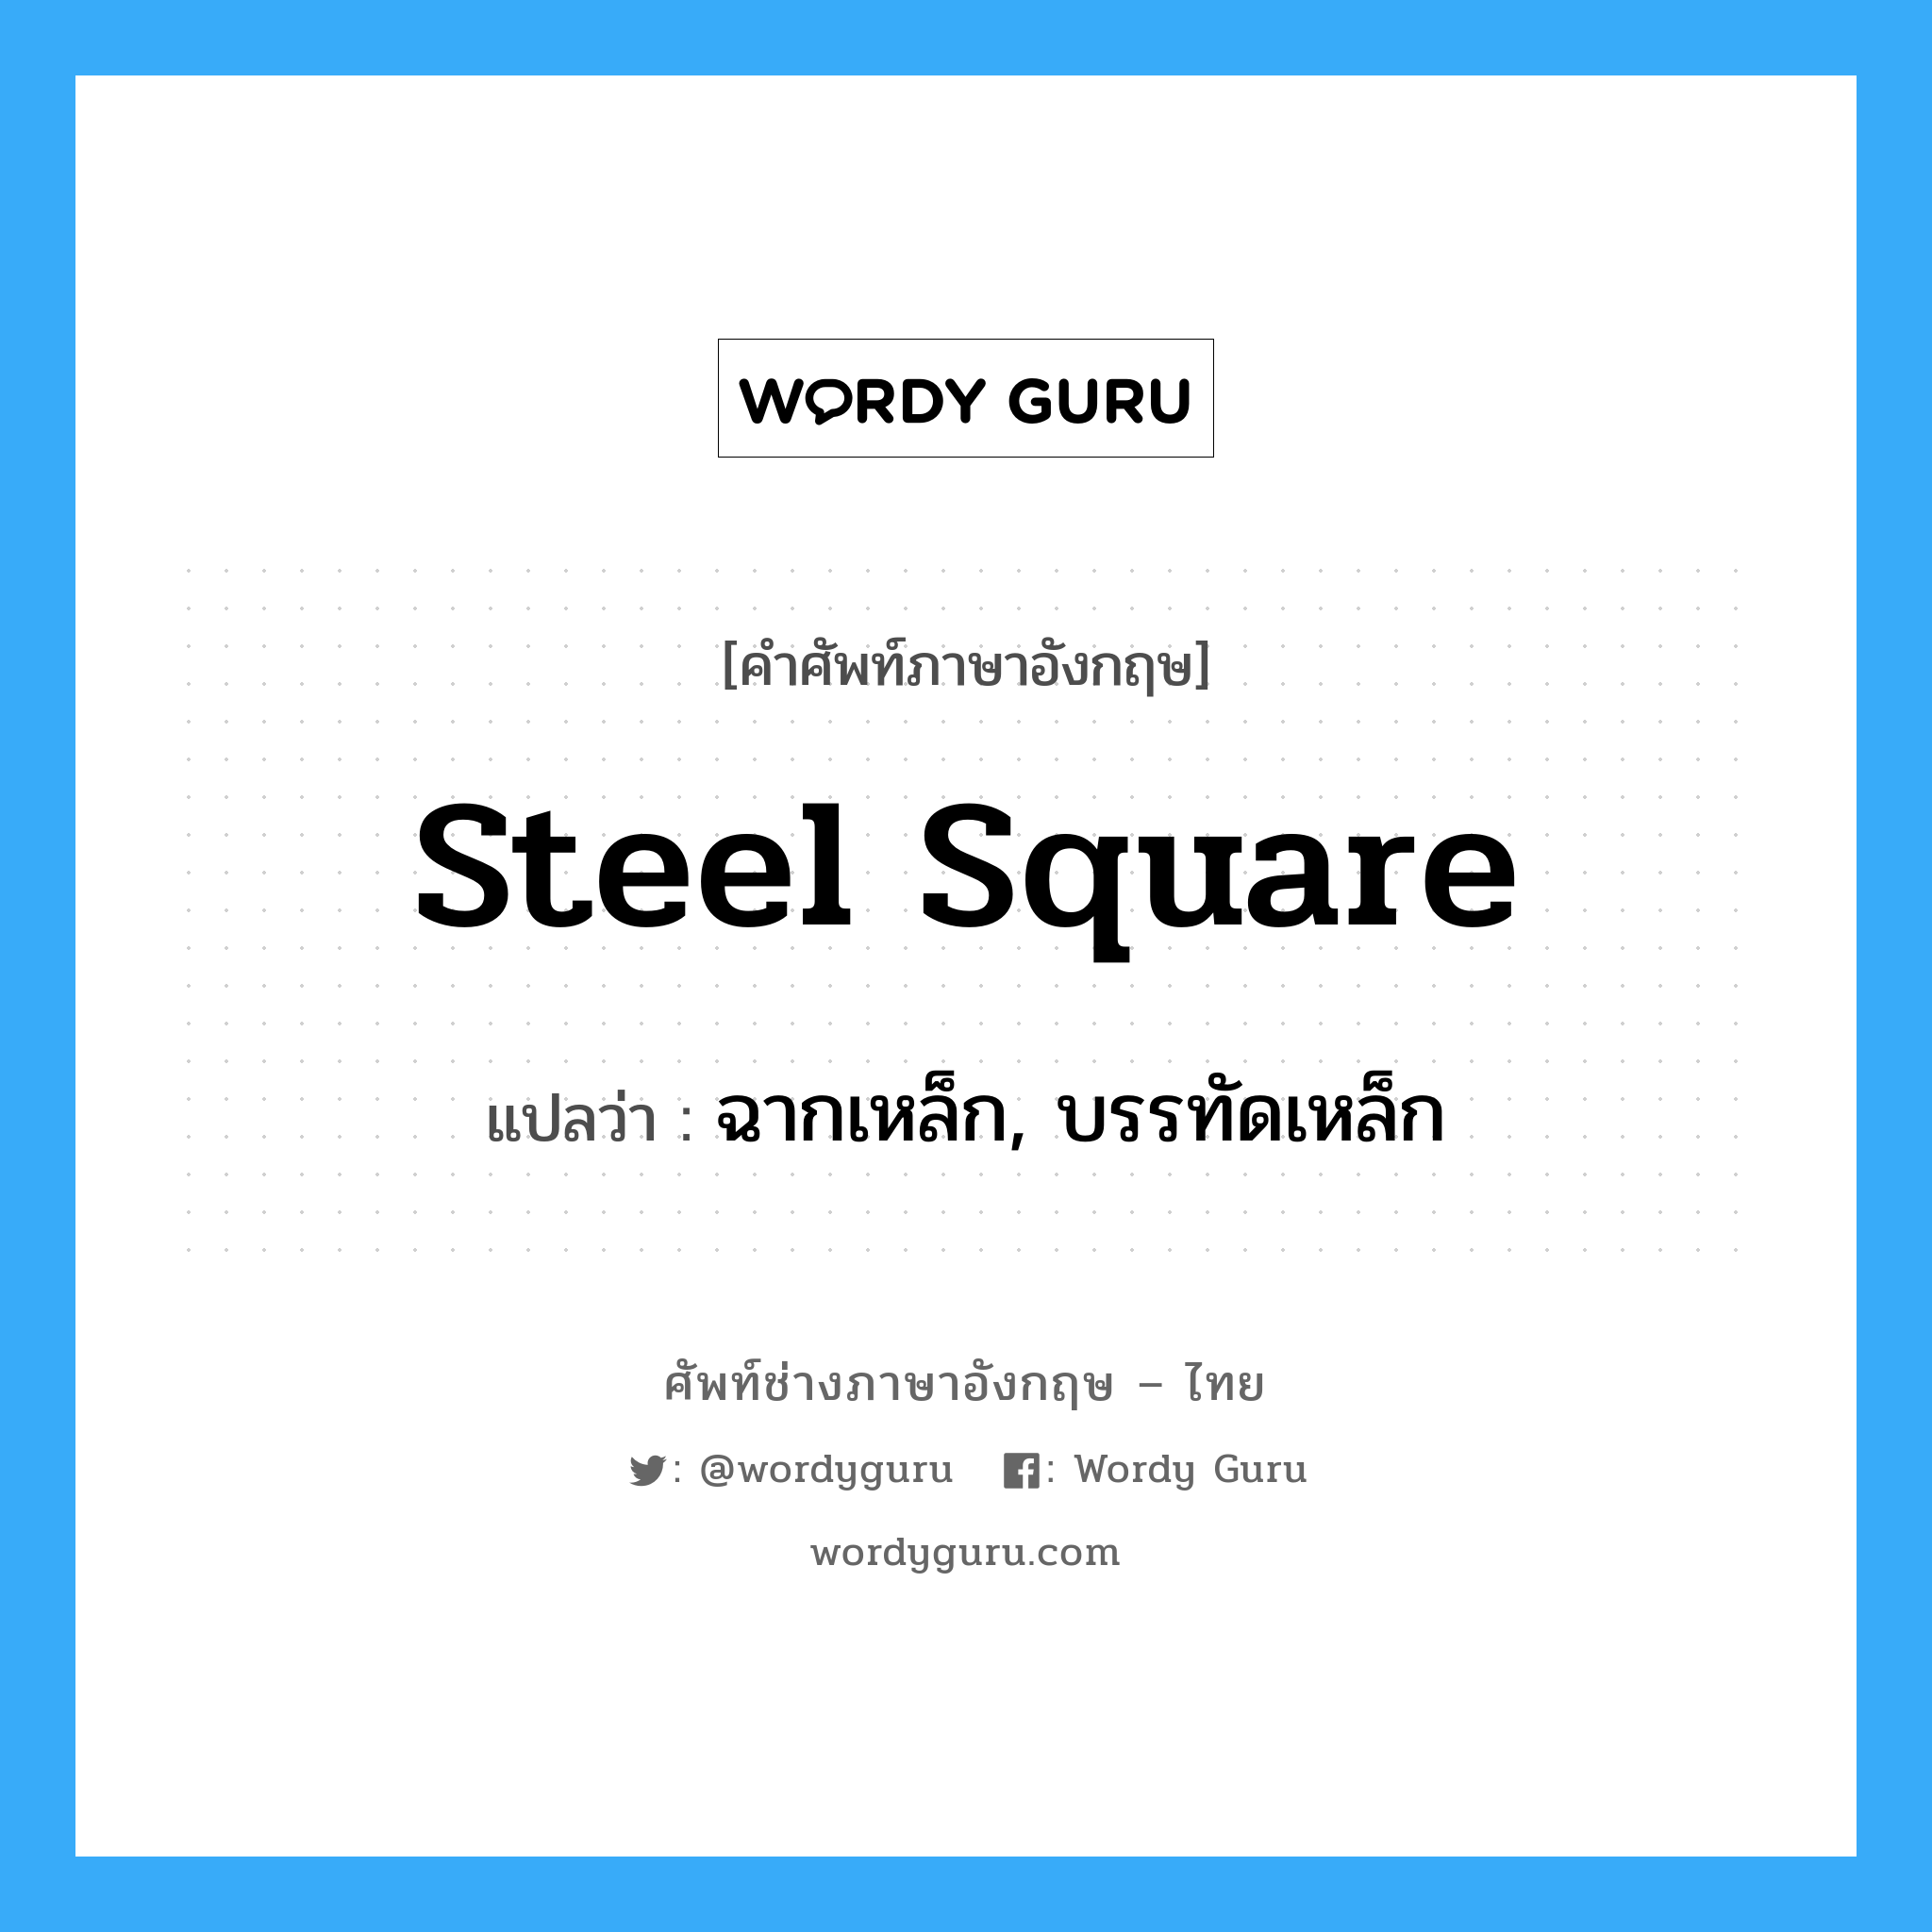 ฉากเหล็ก, บรรทัดเหล็ก ภาษาอังกฤษ?, คำศัพท์ช่างภาษาอังกฤษ - ไทย ฉากเหล็ก, บรรทัดเหล็ก คำศัพท์ภาษาอังกฤษ ฉากเหล็ก, บรรทัดเหล็ก แปลว่า steel square